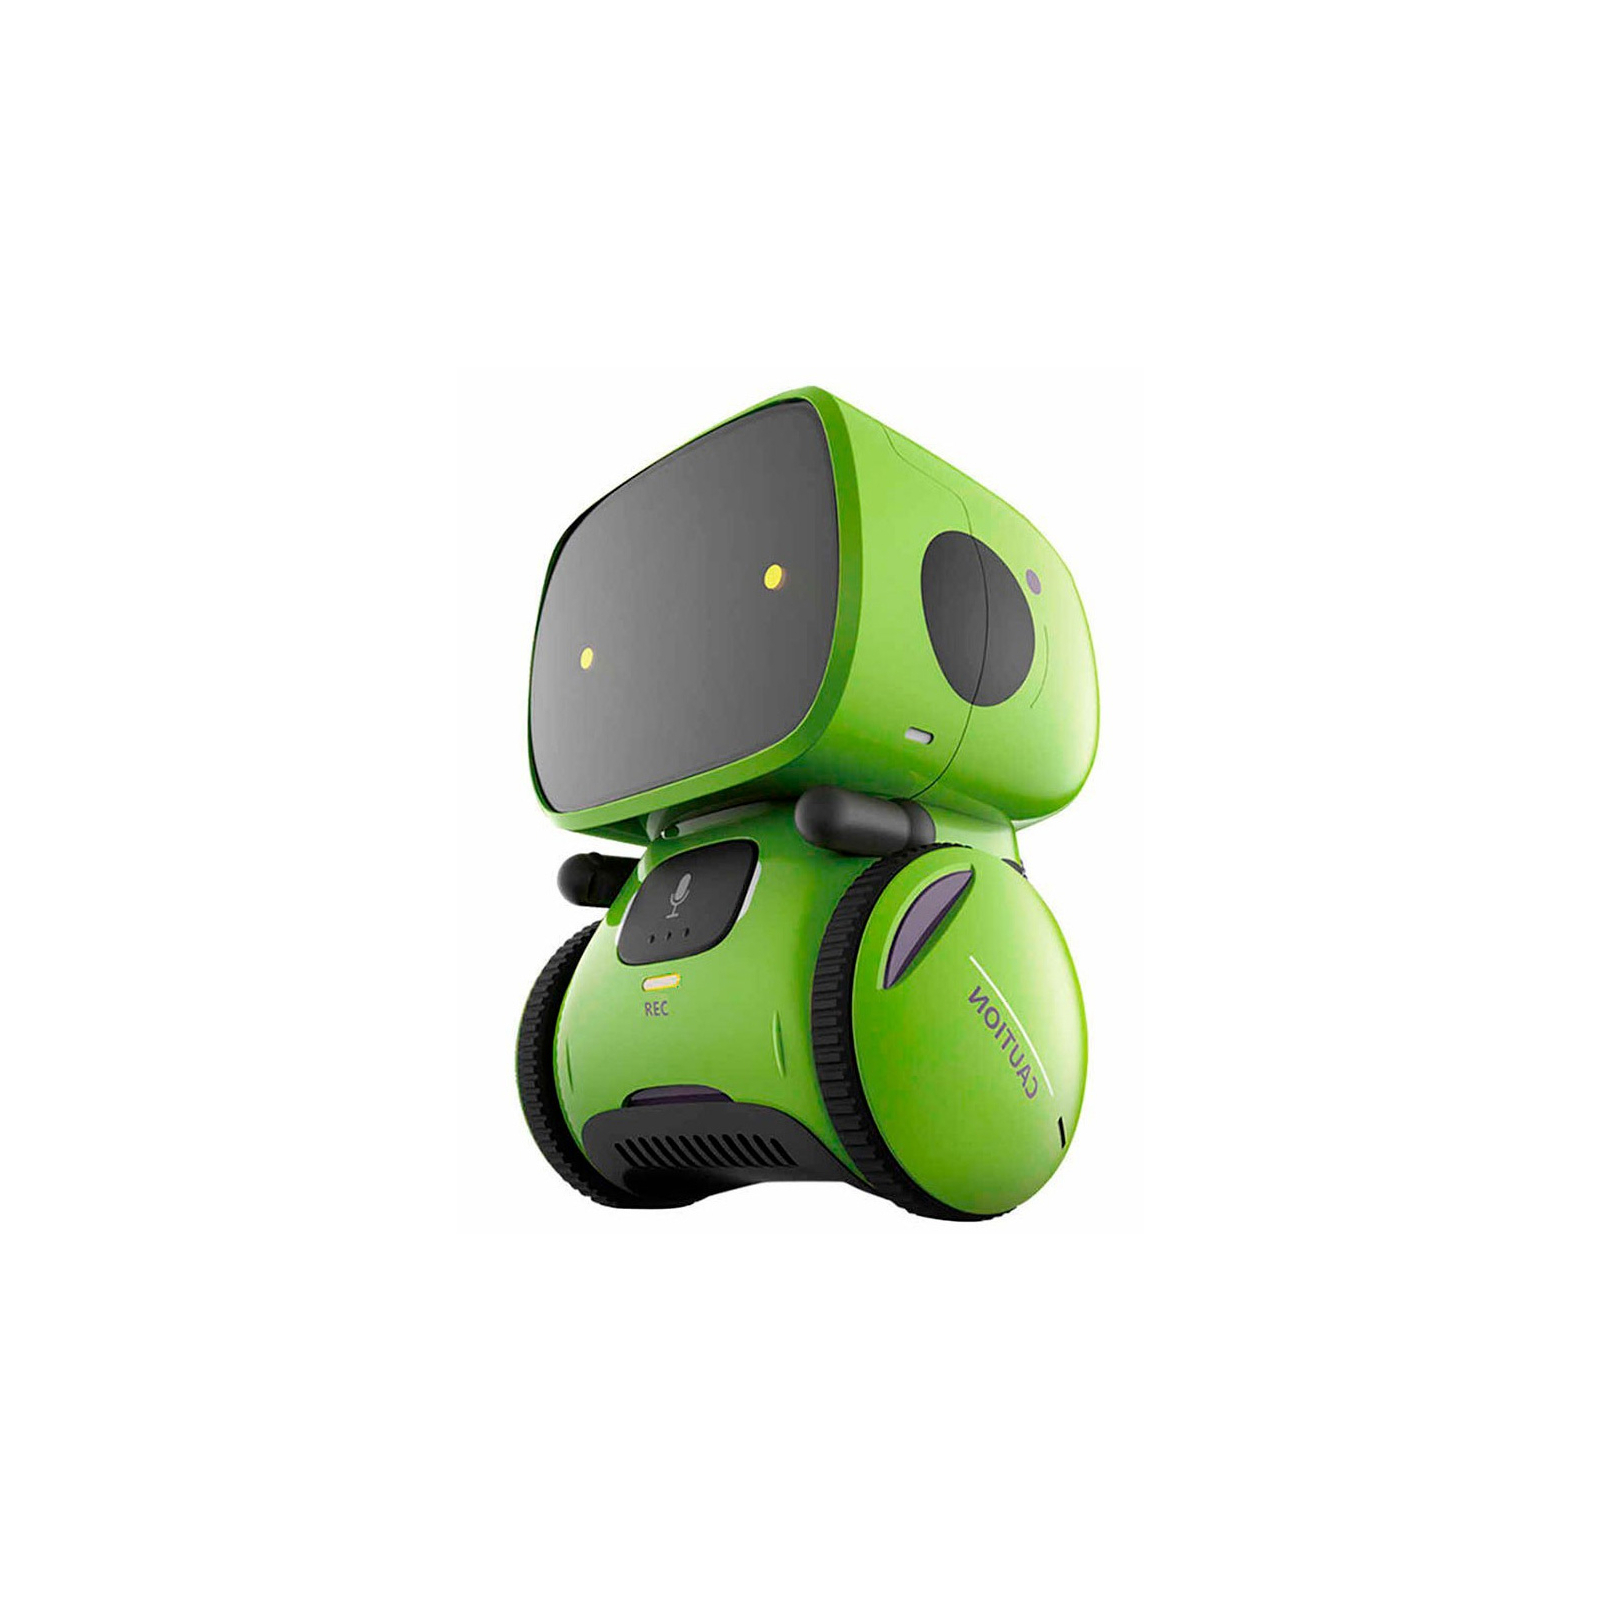 Интерактивная игрушка AT-Robot робот с голосовым управлением зеленый, рос. (AT001-02) изображение 2